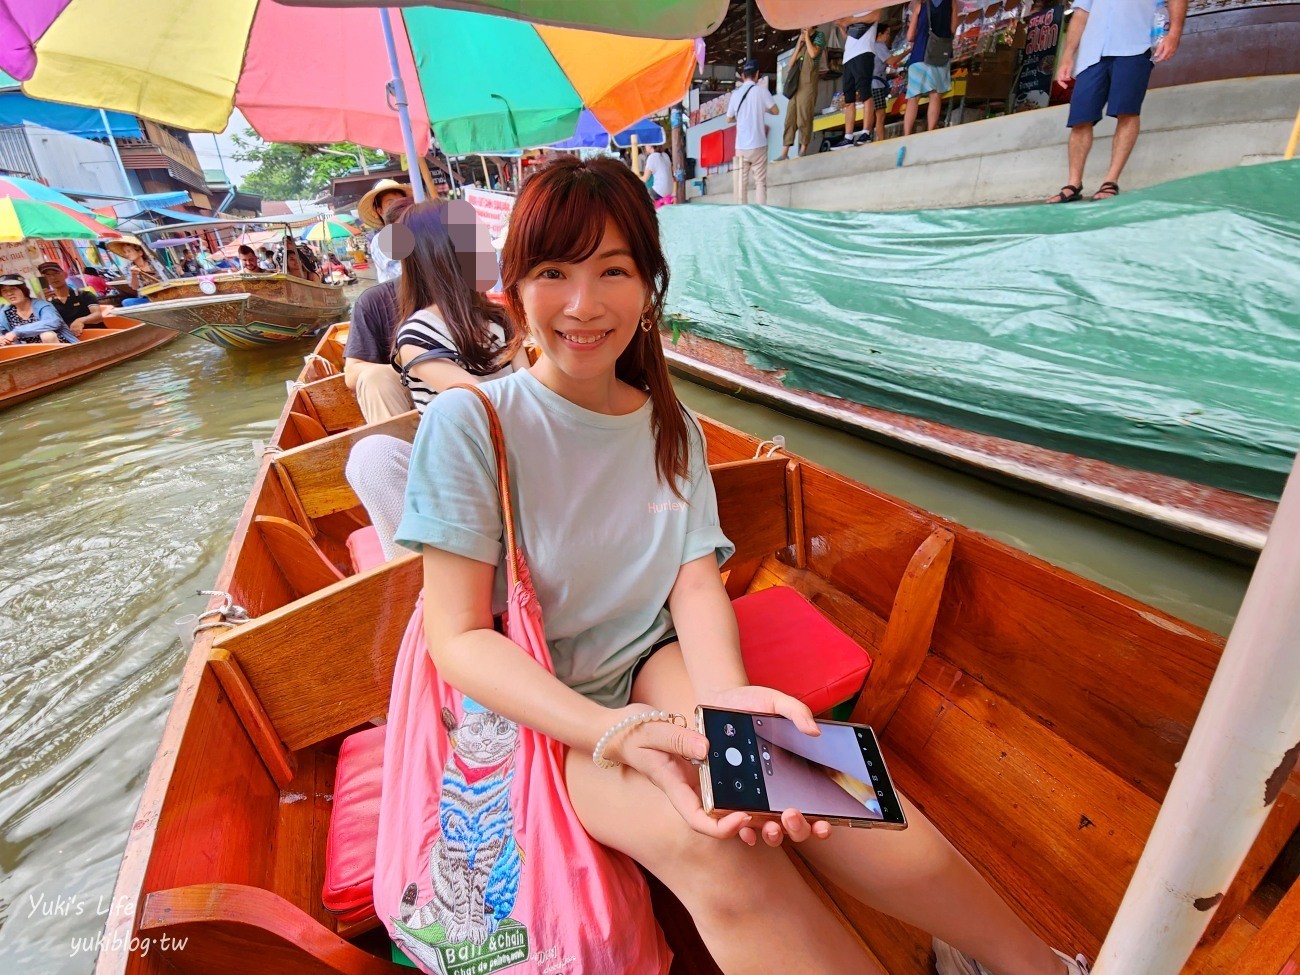 【曼谷自由行】曼谷必去6個水上市場、海鮮市場推薦懶人包(交通&營業資訊) - yuki.tw